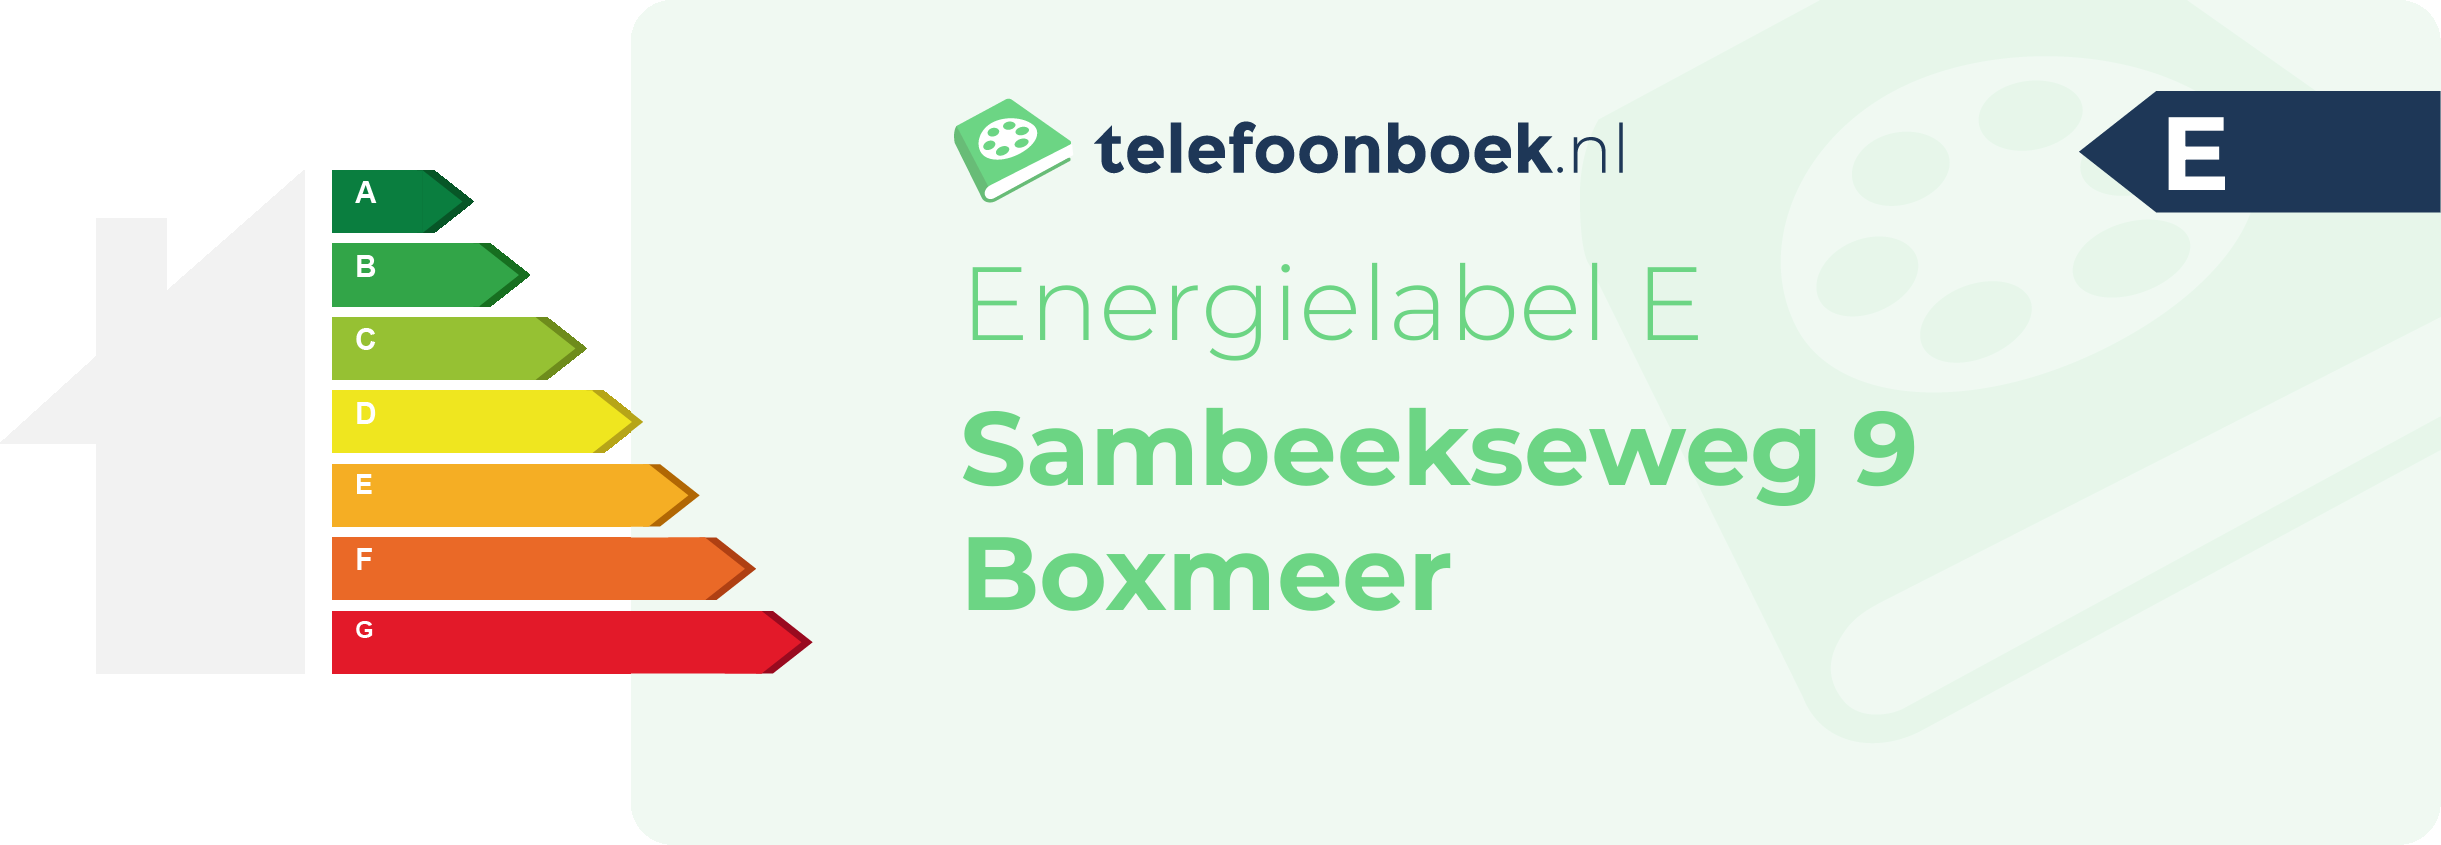 Energielabel Sambeekseweg 9 Boxmeer